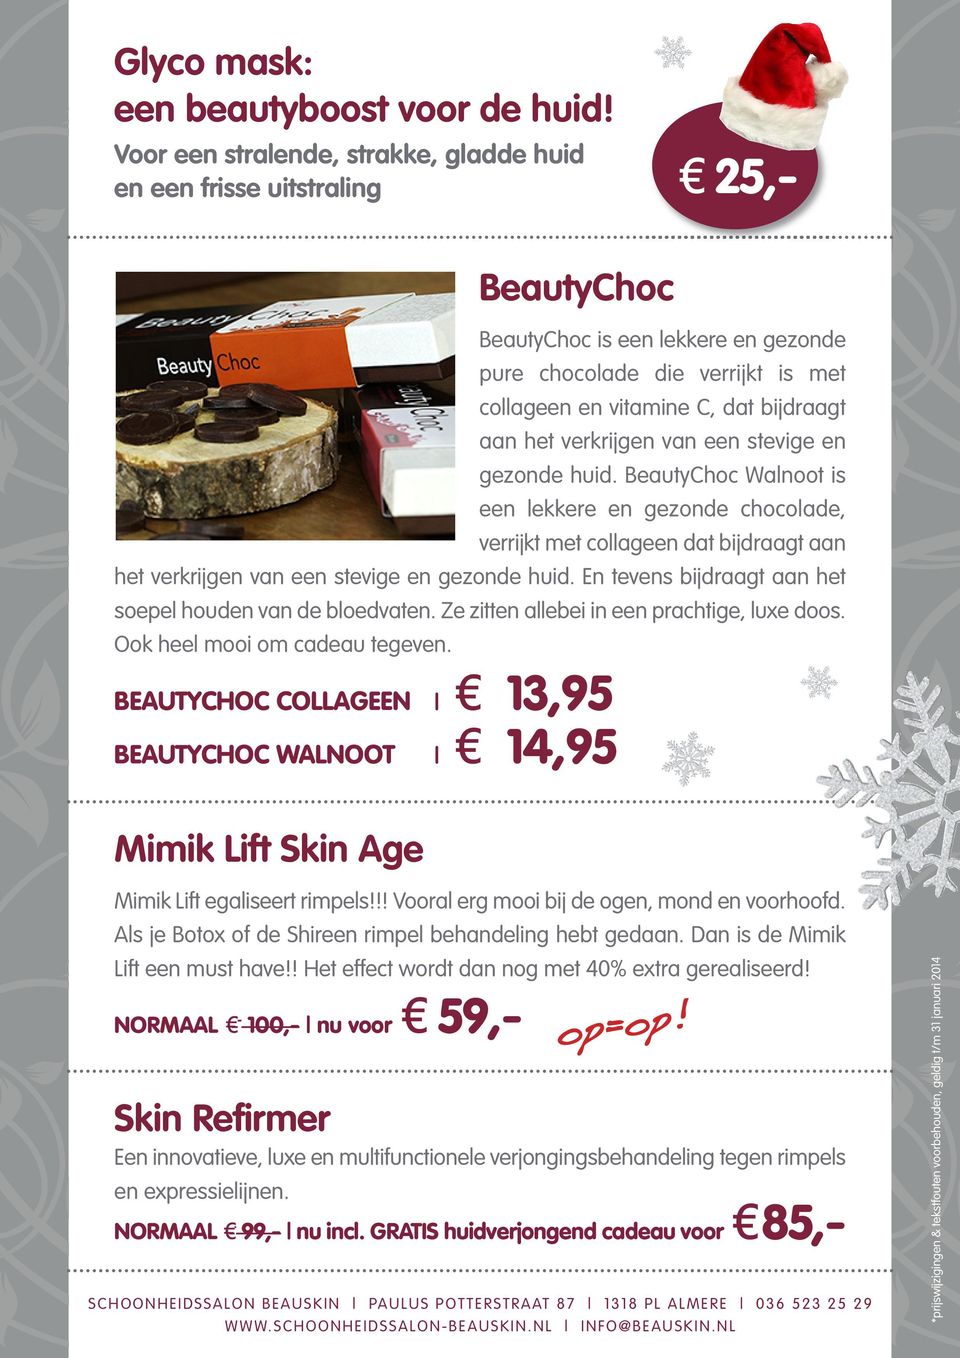 stevige en gezonde huid. BeautyChoc Walnoot is een lekkere en gezonde chocolade, verrijkt met collageen dat bijdraagt aan het verkrijgen van een stevige en gezonde huid.